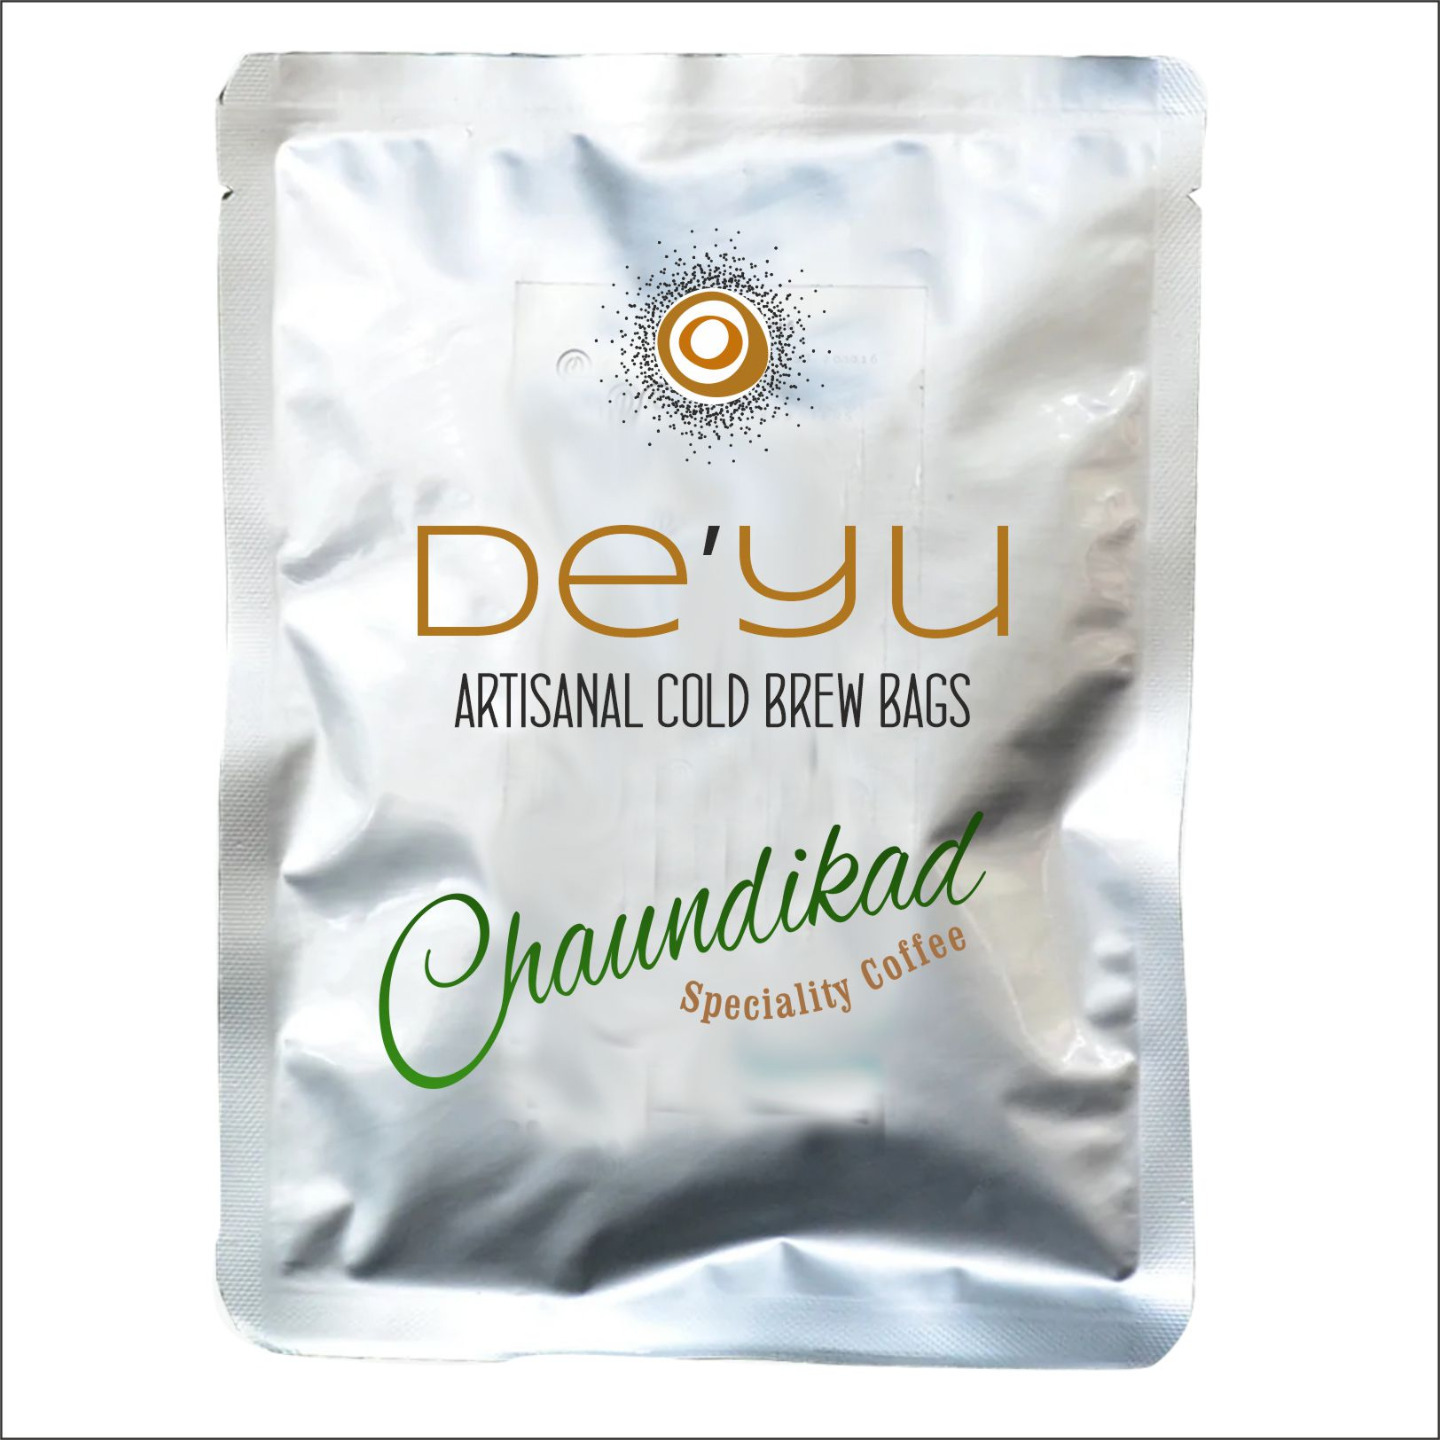 CHAUNDIKAD by DEYU - Artisnal cold brew bags